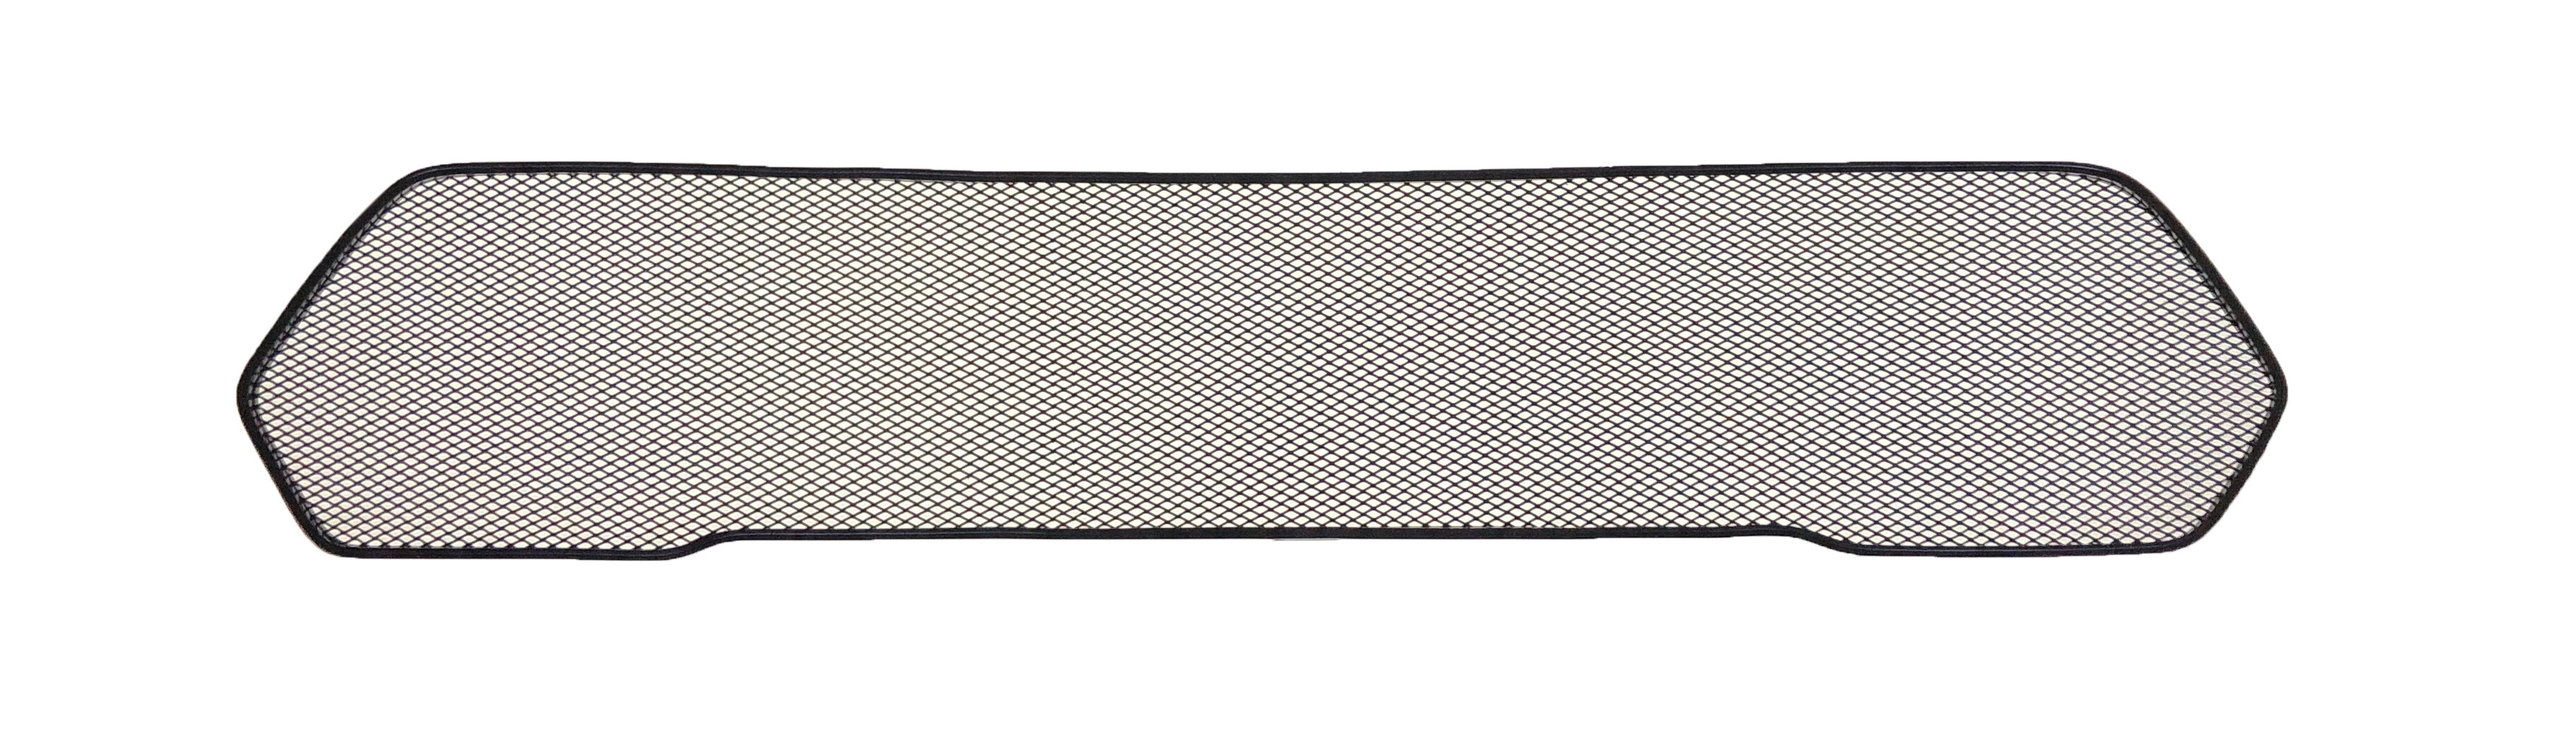 Защита радиатора на Lada Niva Travel 2020 верхняя решетка хромированного цвета (защитная решетка для радиатора)